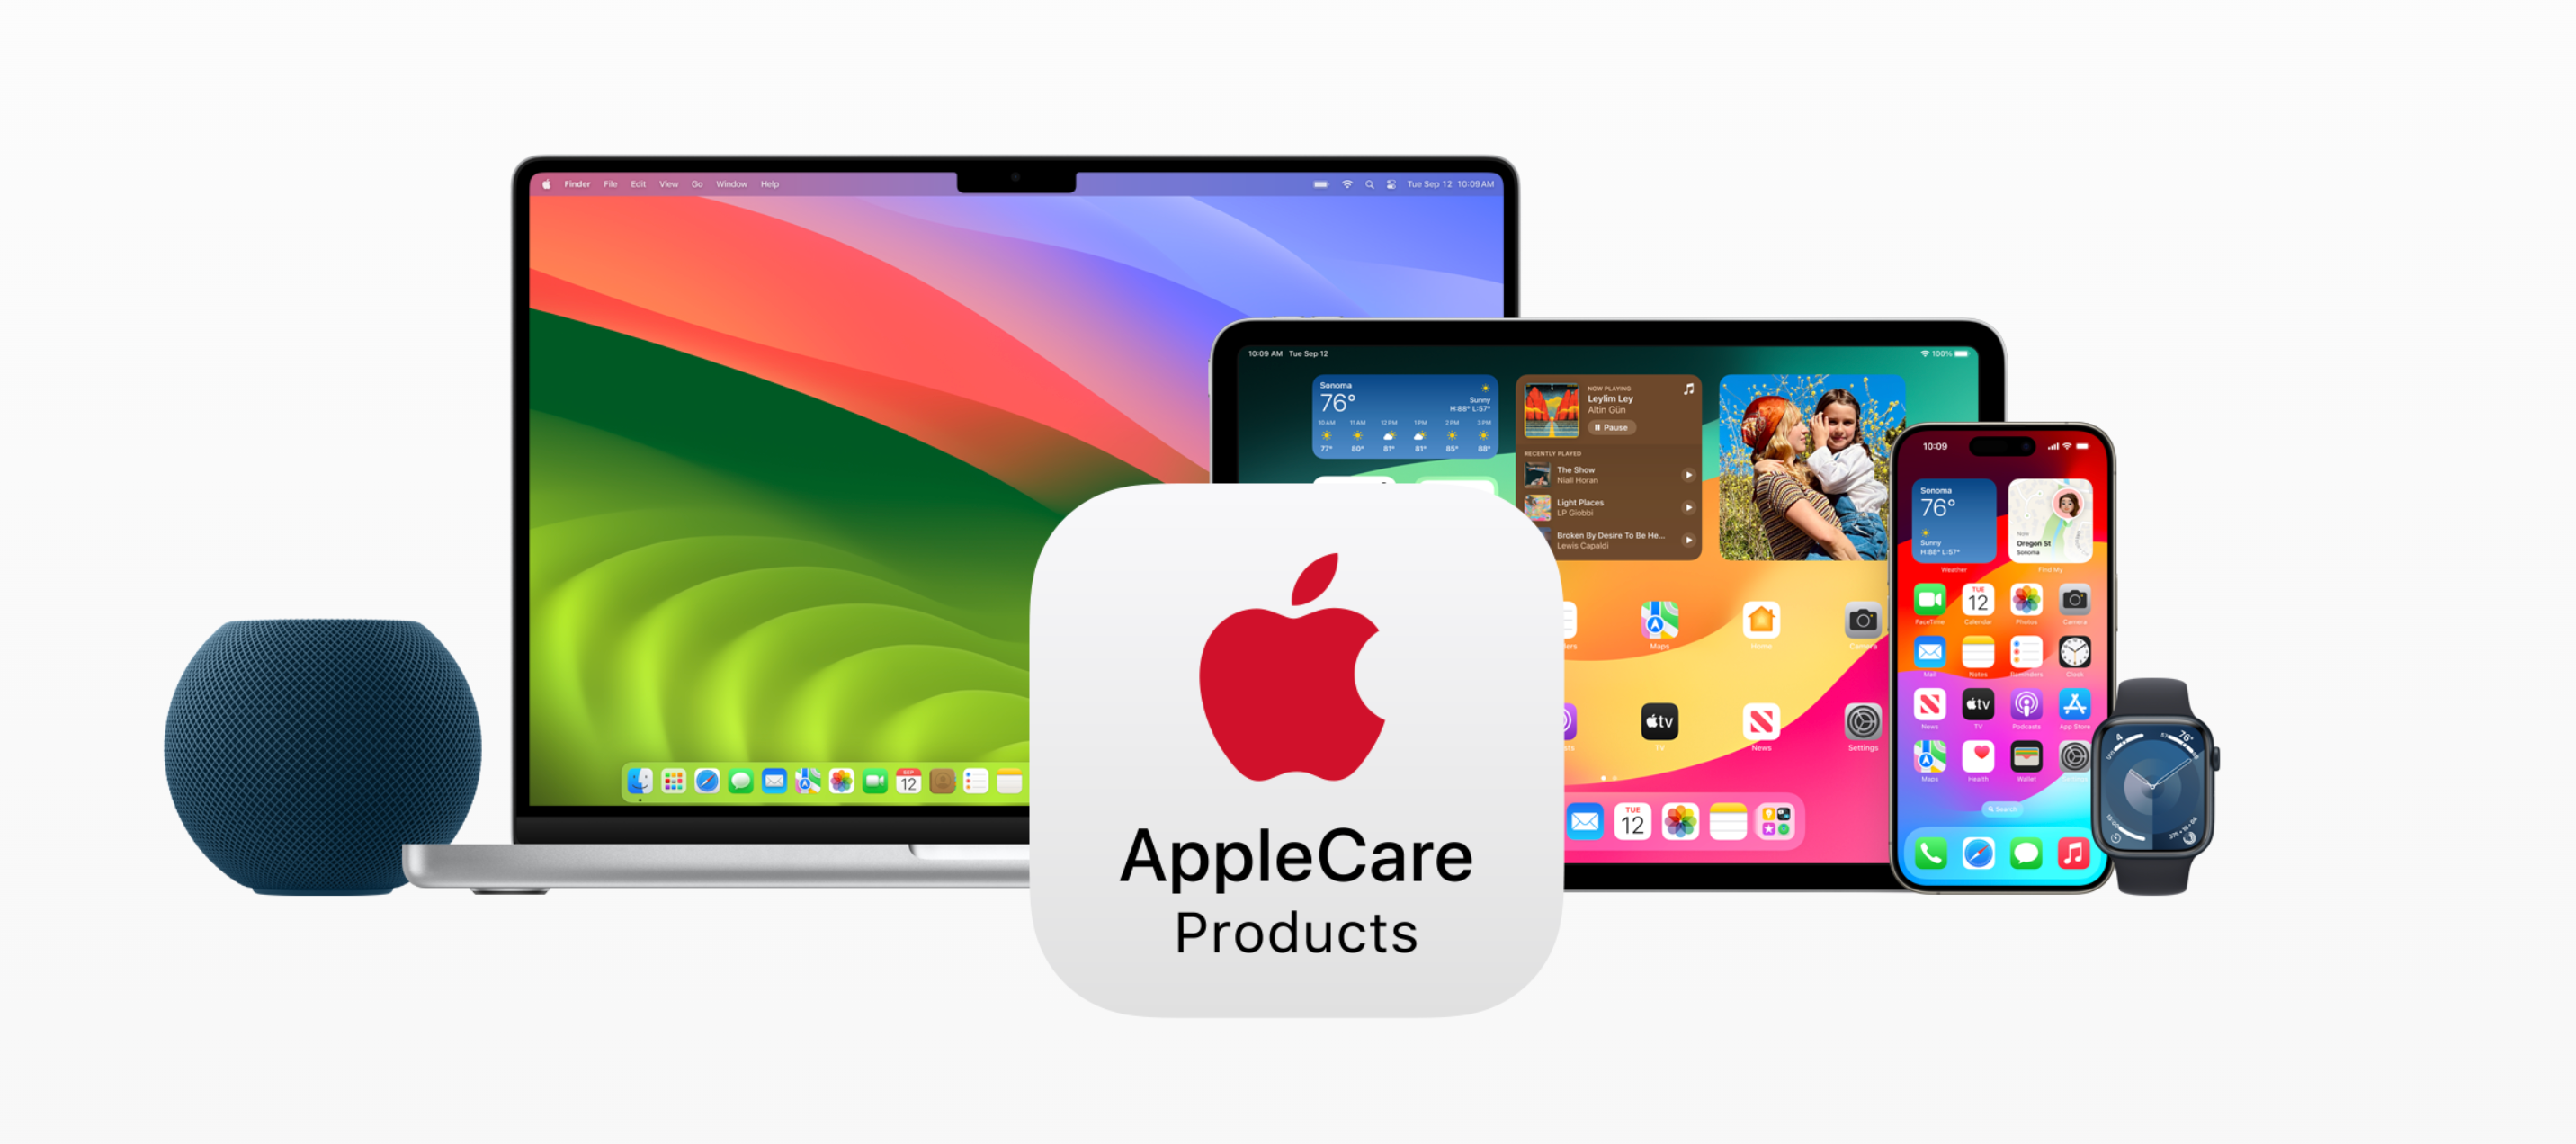 Um anúncio da Apple mostrando a gama de produtos compatíveis com AppleCare, incluindo HomePod, Mac, iPad, Apple Watch e iPhone